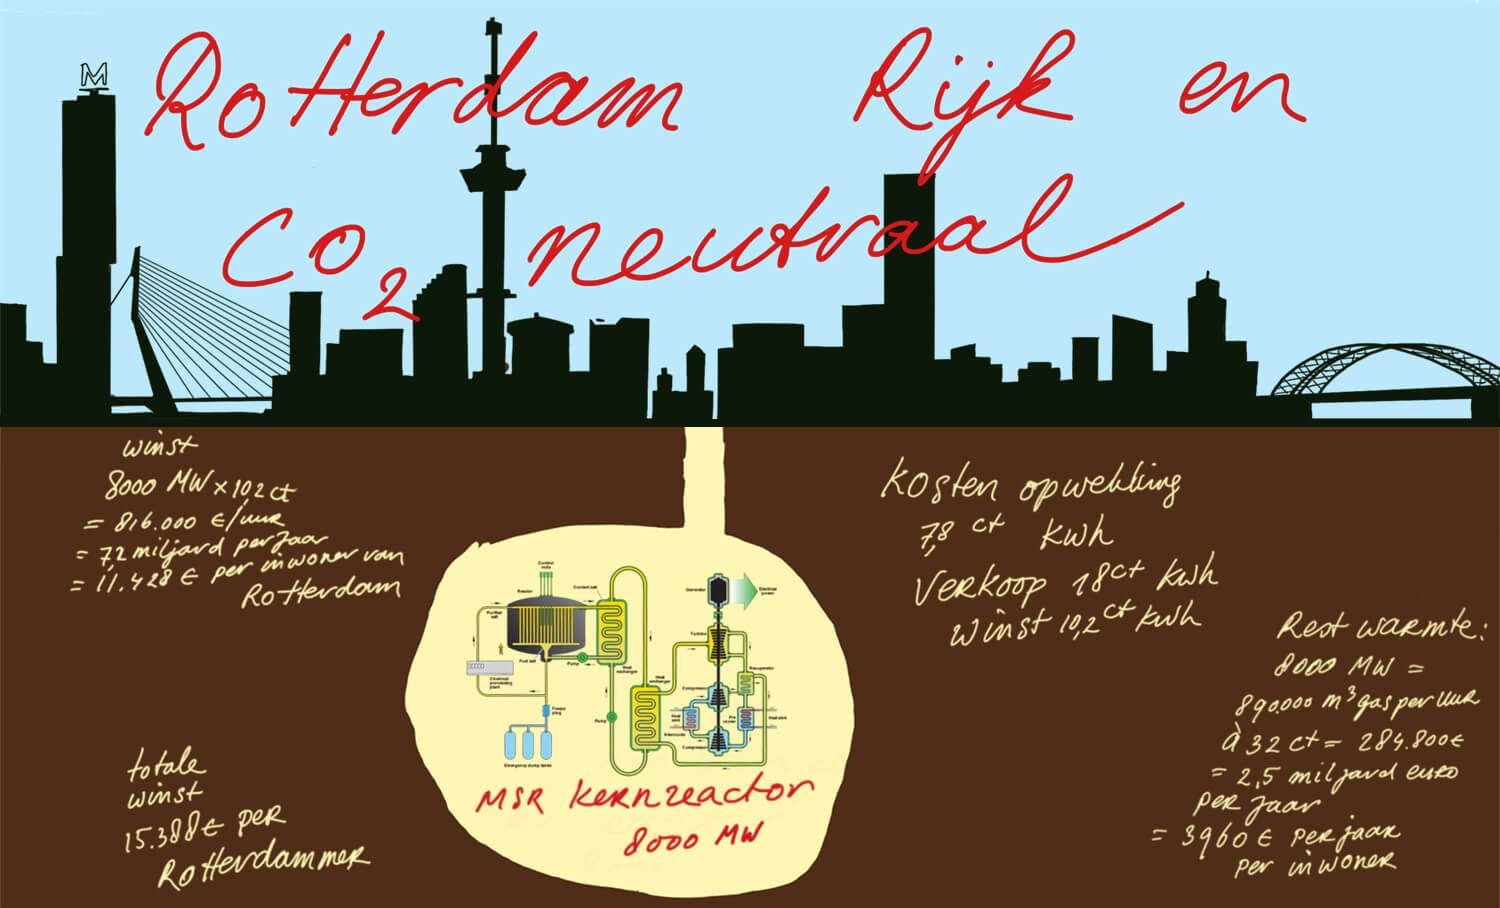 Rotterdam Rijk en CO2-neutraal door Atelier van Lieshout 